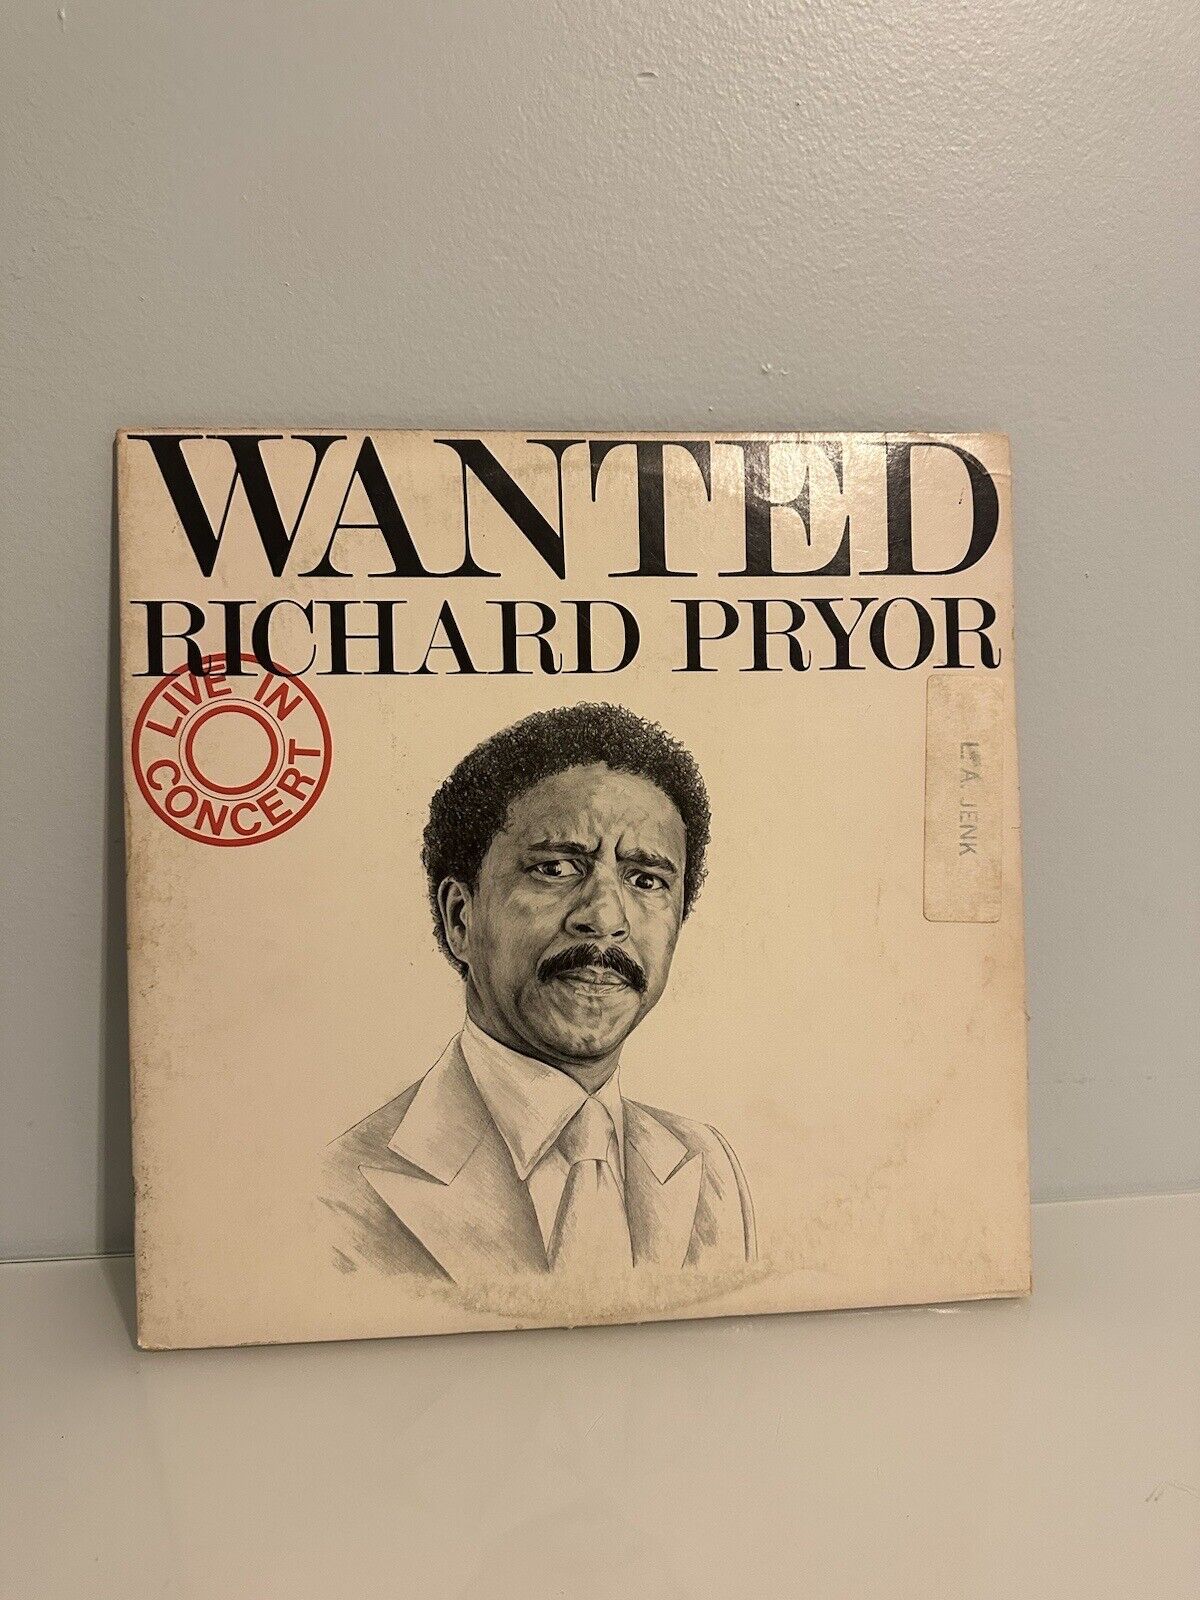 VTG 1978 ORIGINAL RICHARD PRYOR WANTED LIVE IN CONCERT VINYL RECORD SET